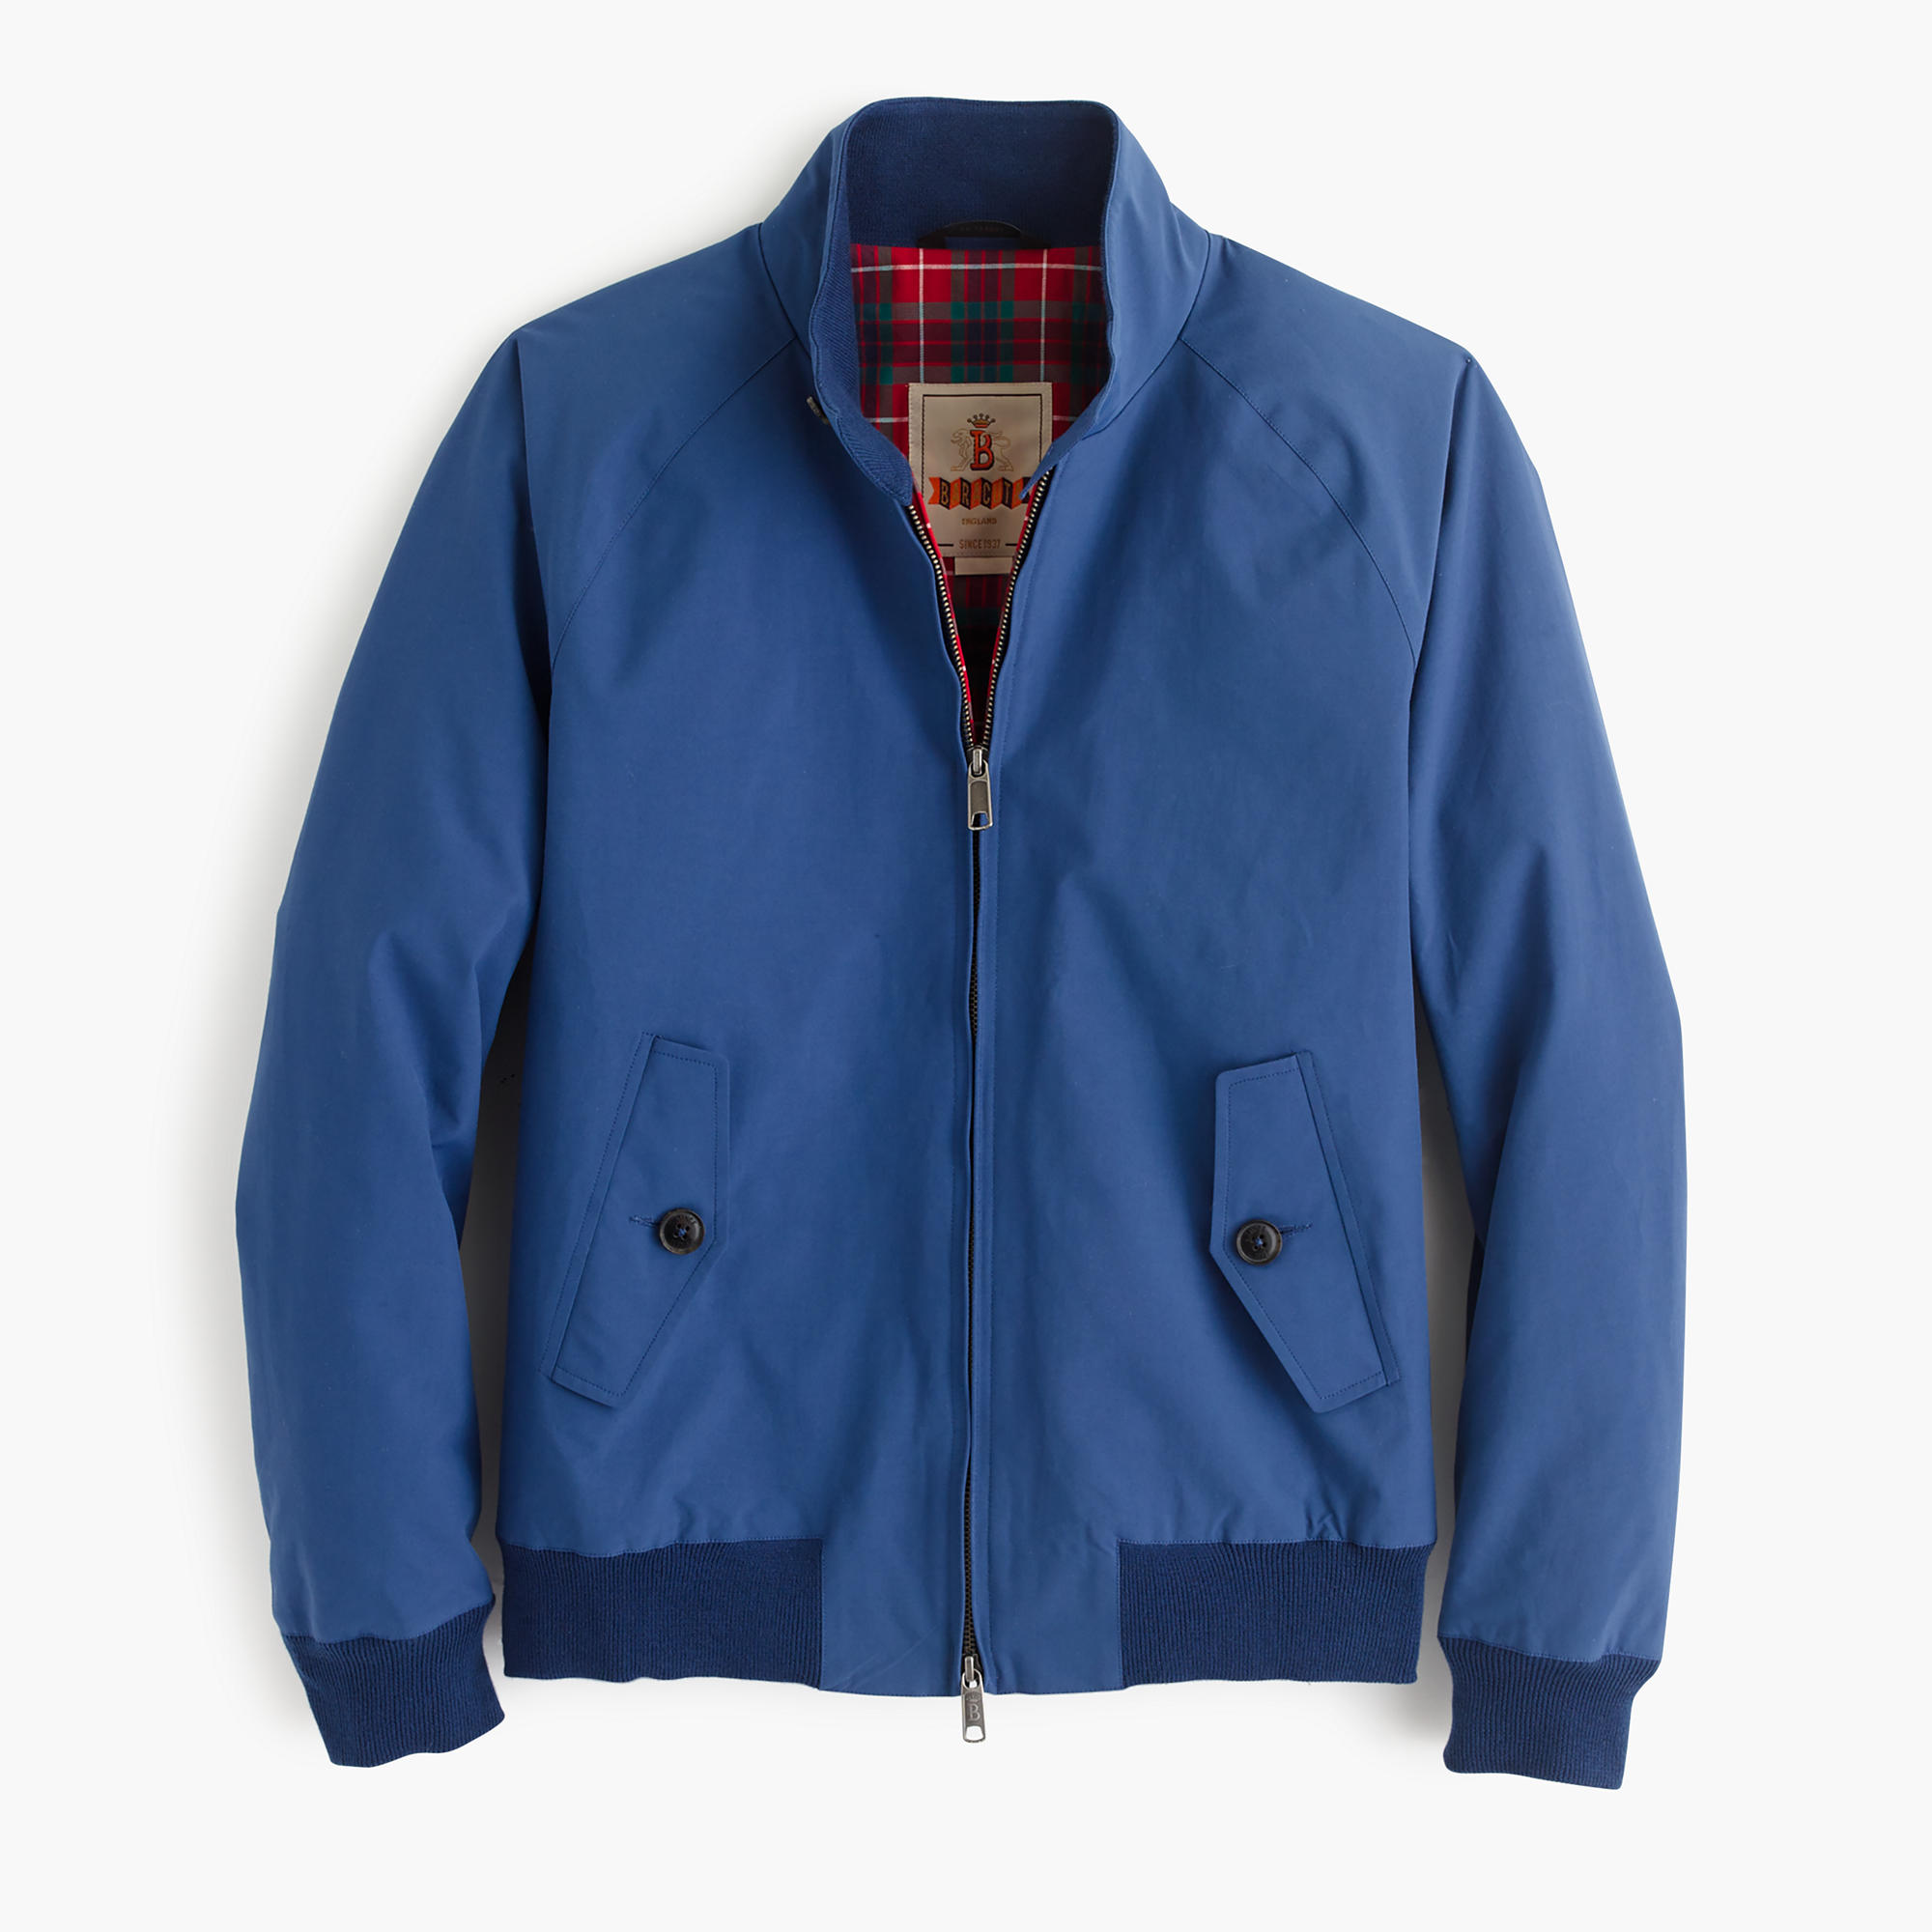 Baracuta G9 Harrington Jacket : Men's Coats & Jackets | J.Crew